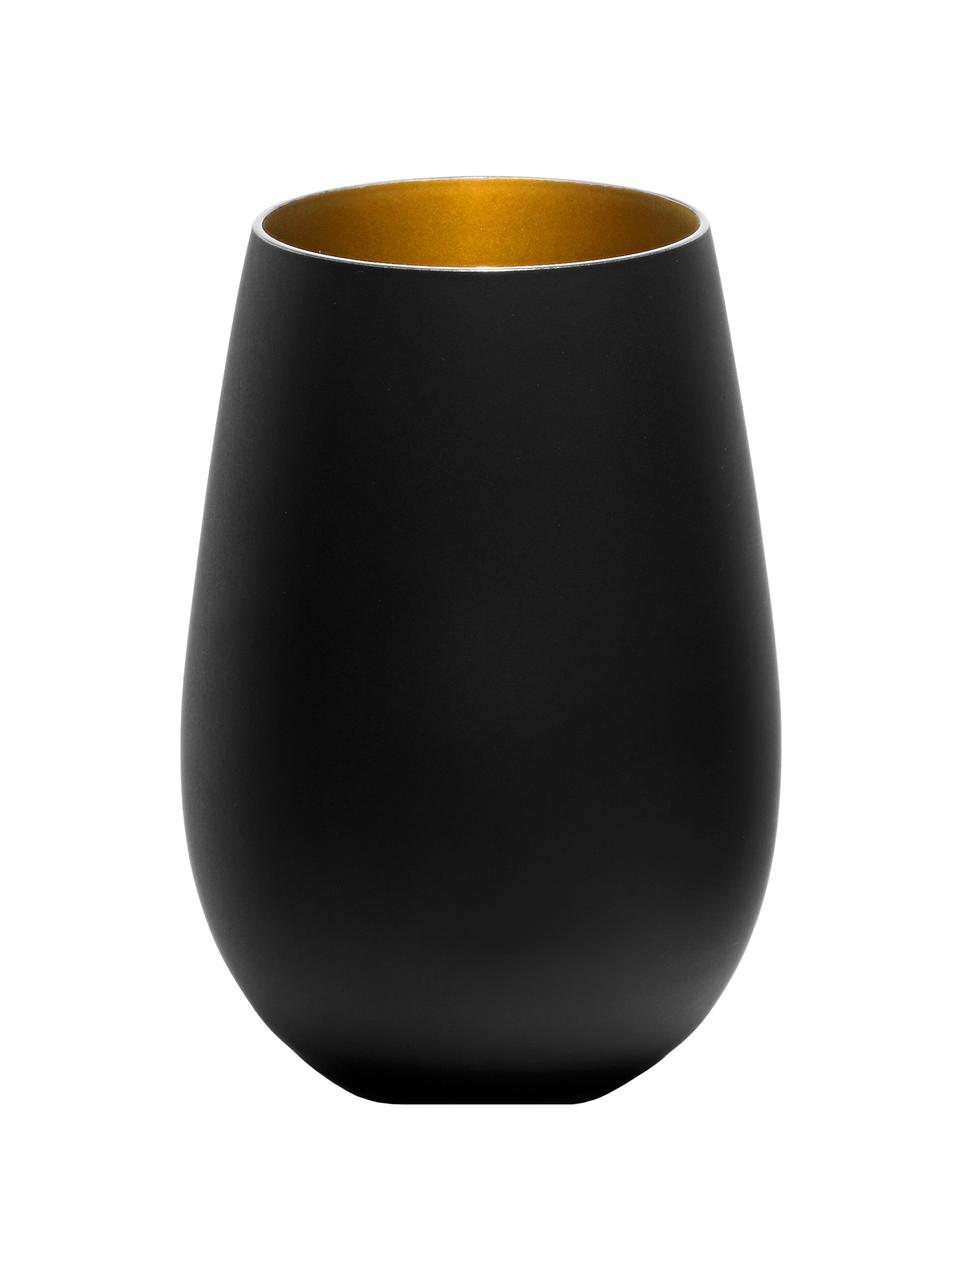 Bicchiere tipo long drink in cristallo nero/dorato Elements 6 pz, Cristallo rivestito, Nero, ottonato, Ø 9 x Alt. 12 cm